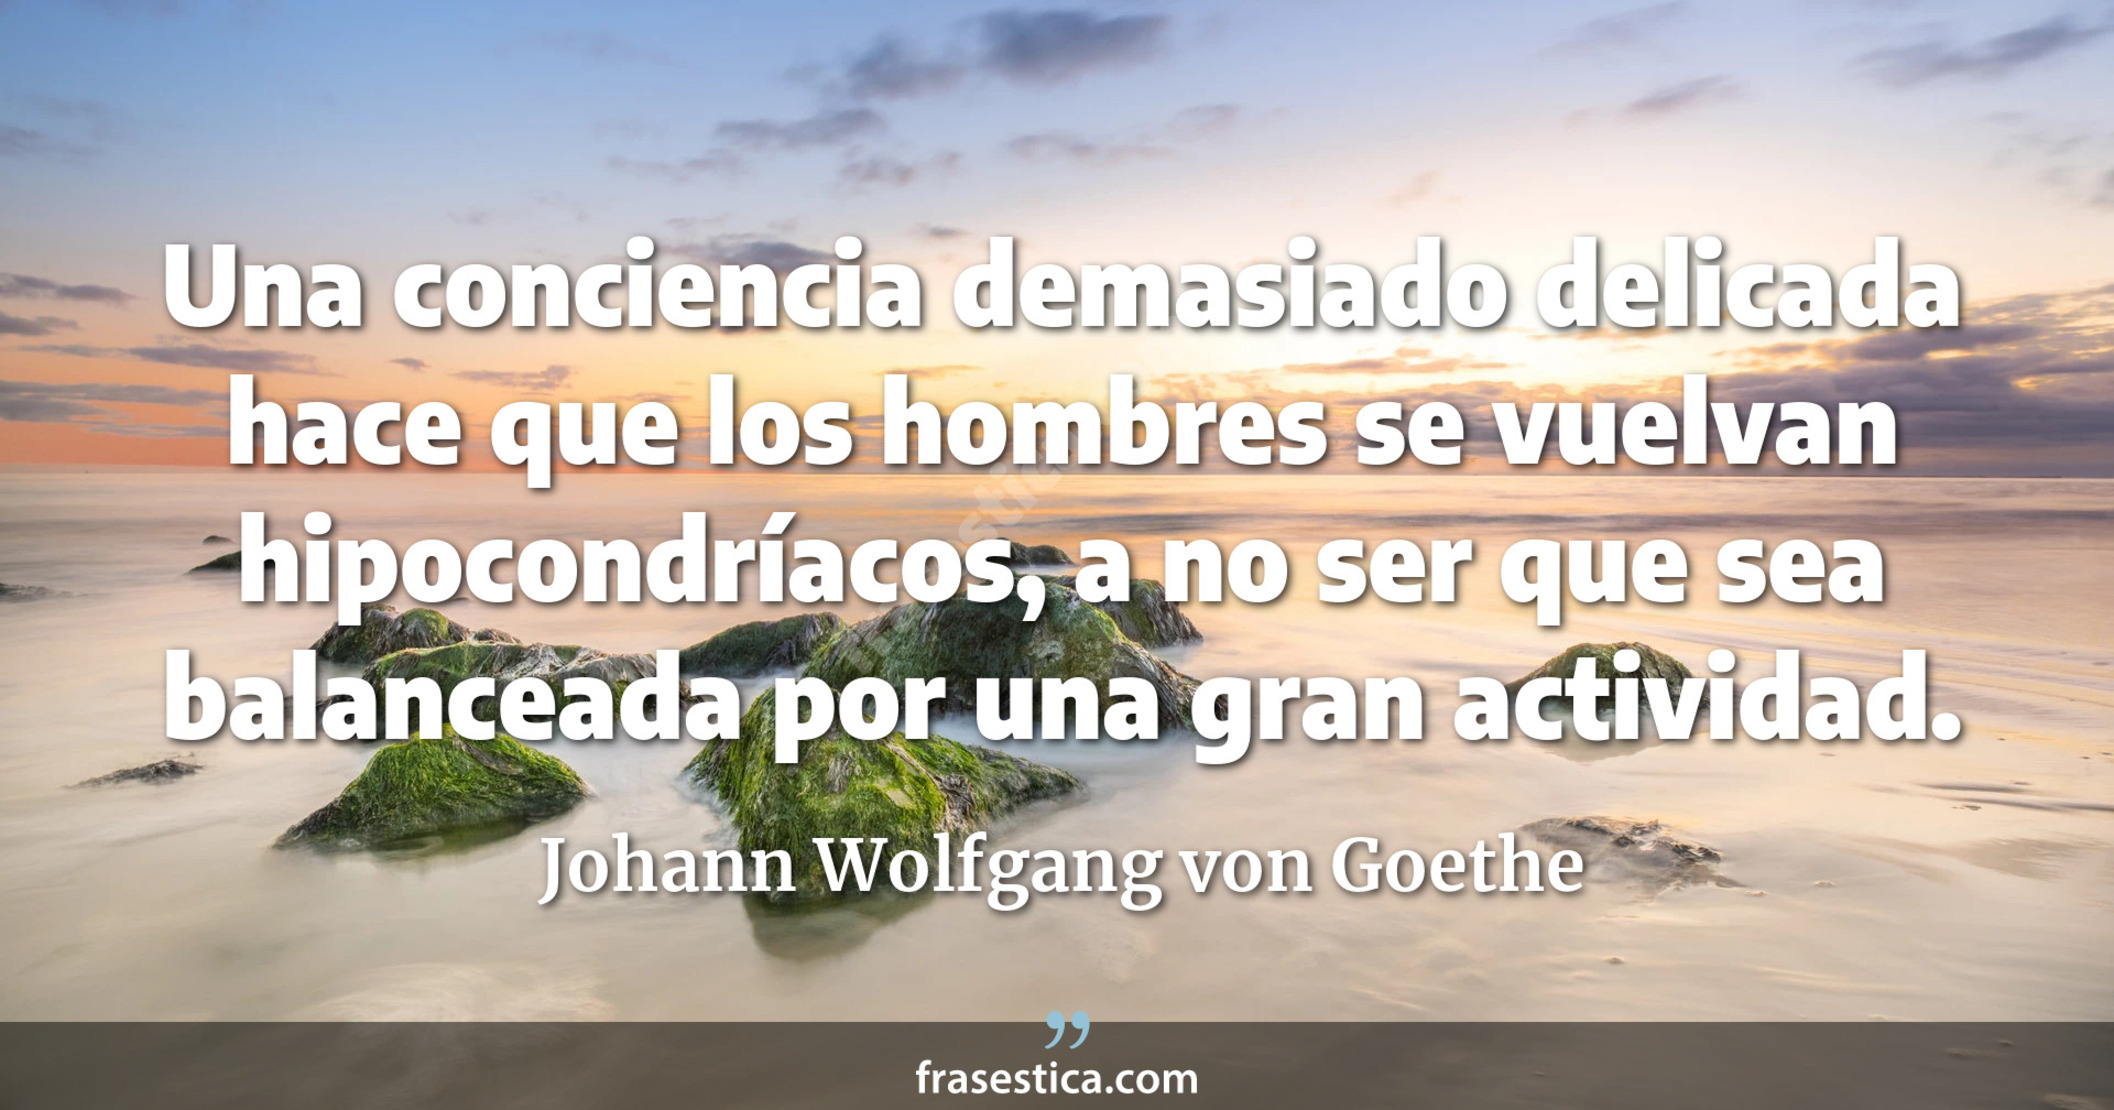 Una conciencia demasiado delicada hace que los hombres se vuelvan hipocondríacos, a no ser que sea balanceada por una gran actividad. - Johann Wolfgang von Goethe